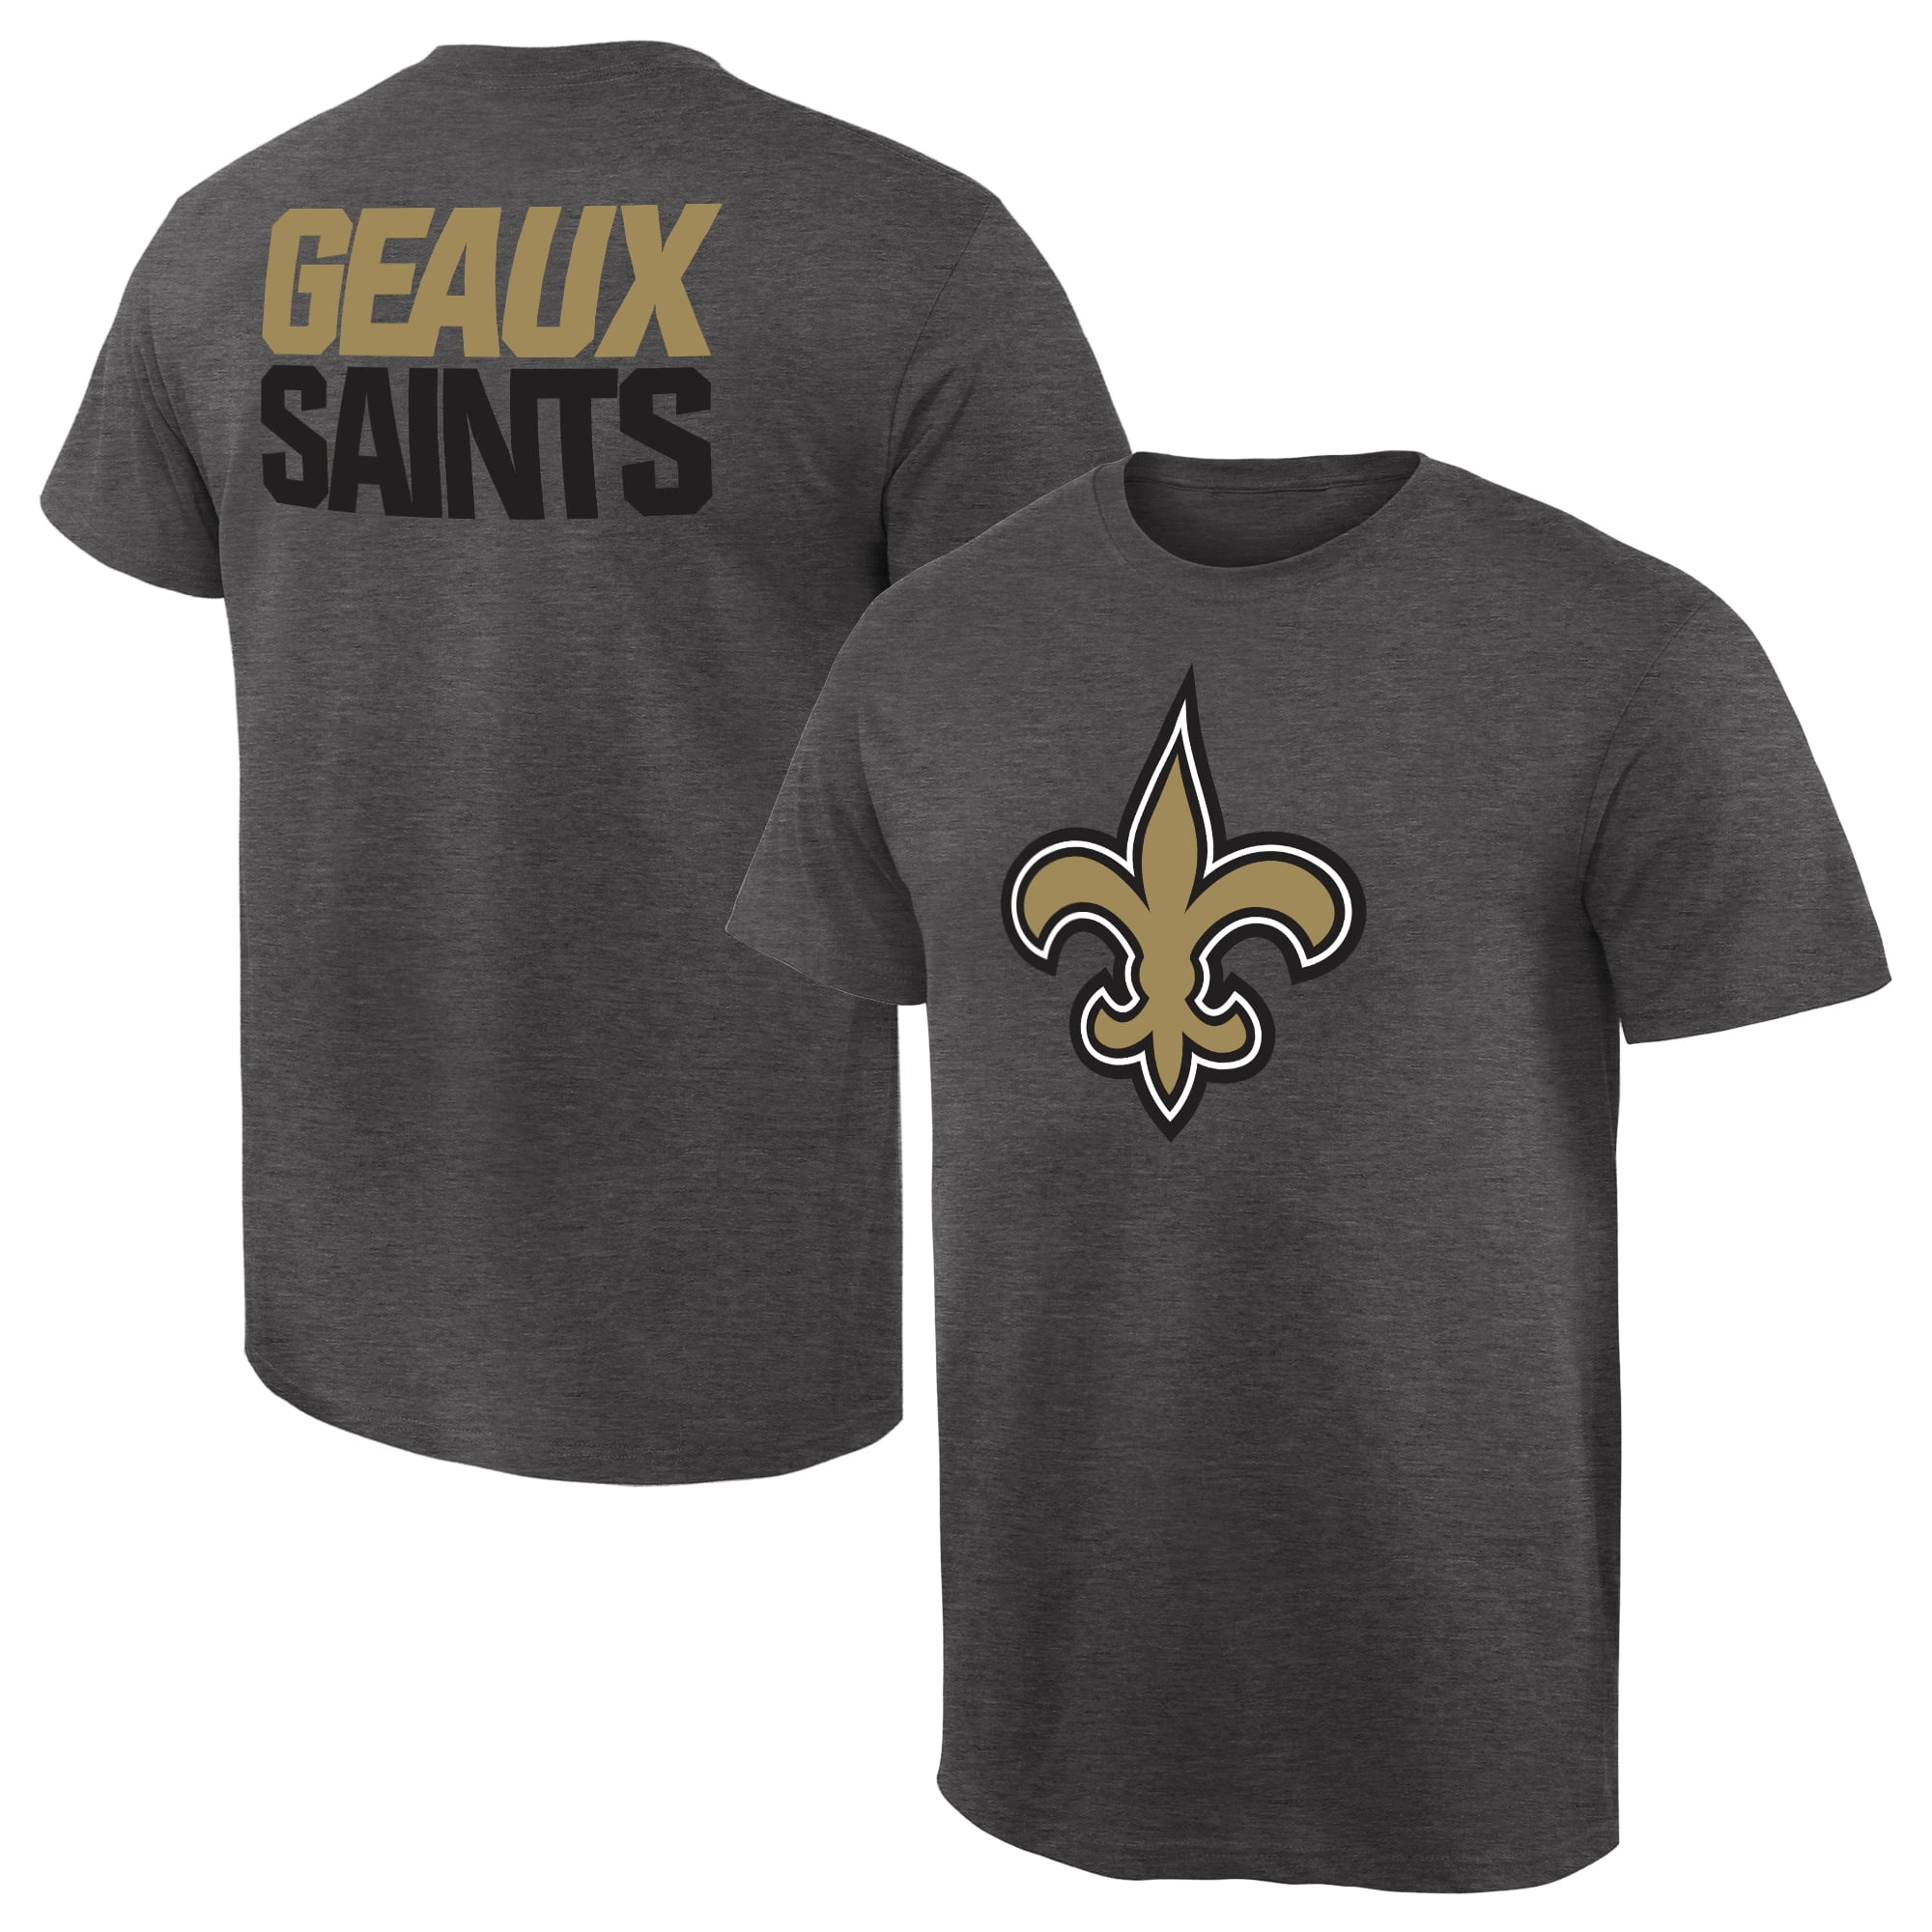 new orleans saints shirts on sale